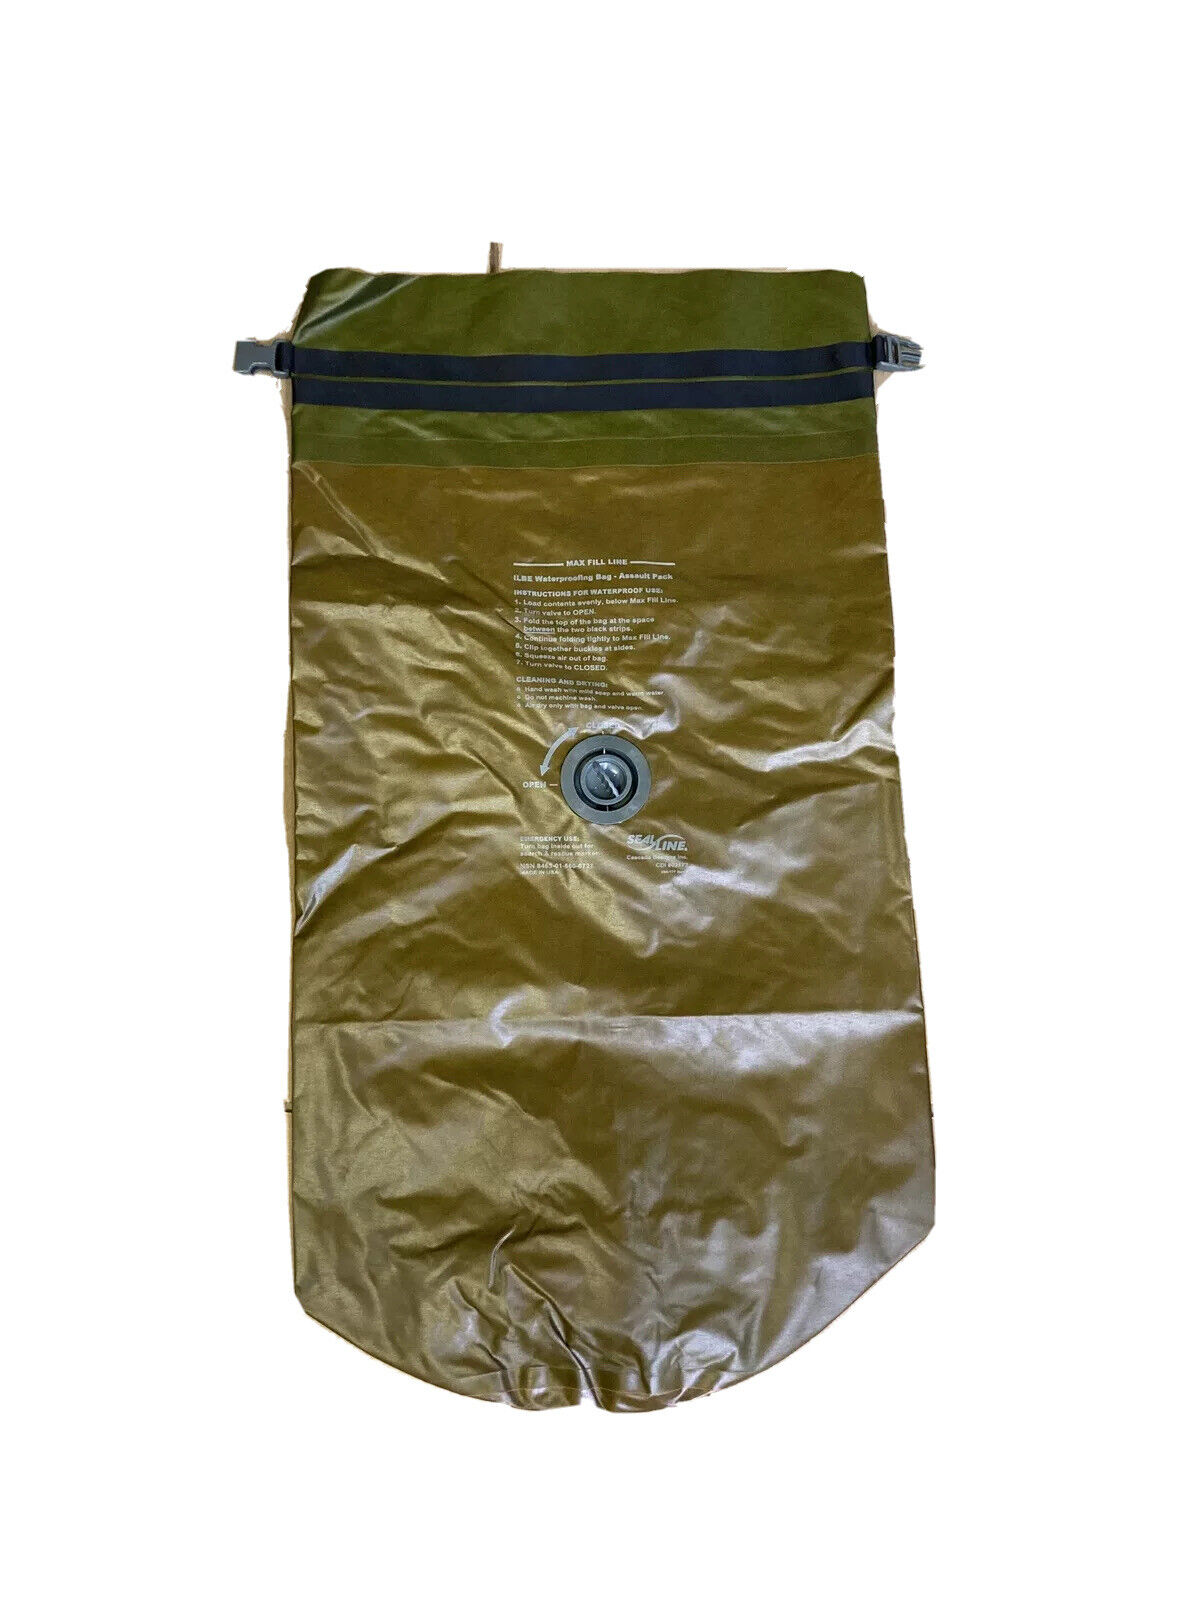 NEW  SEAL LINE Waterproof ILBE Assault Pack Liner Compression Bag Sack 02177 56L